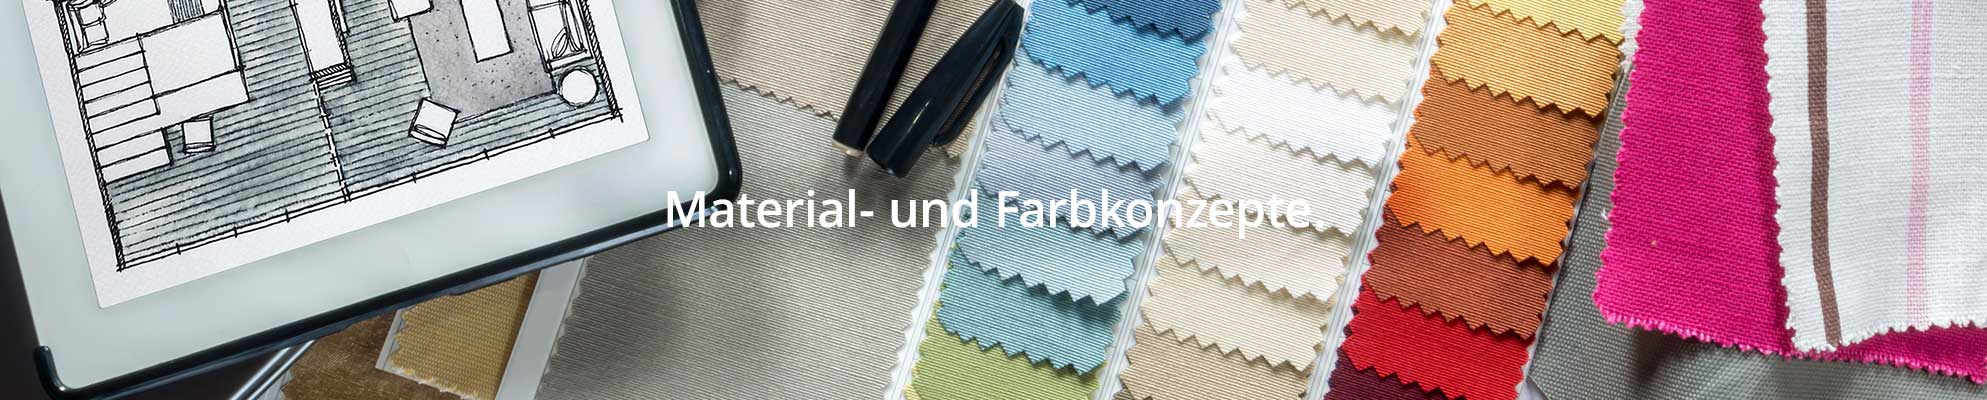 Material-und-Farbkonzepte-Maler-Glarus